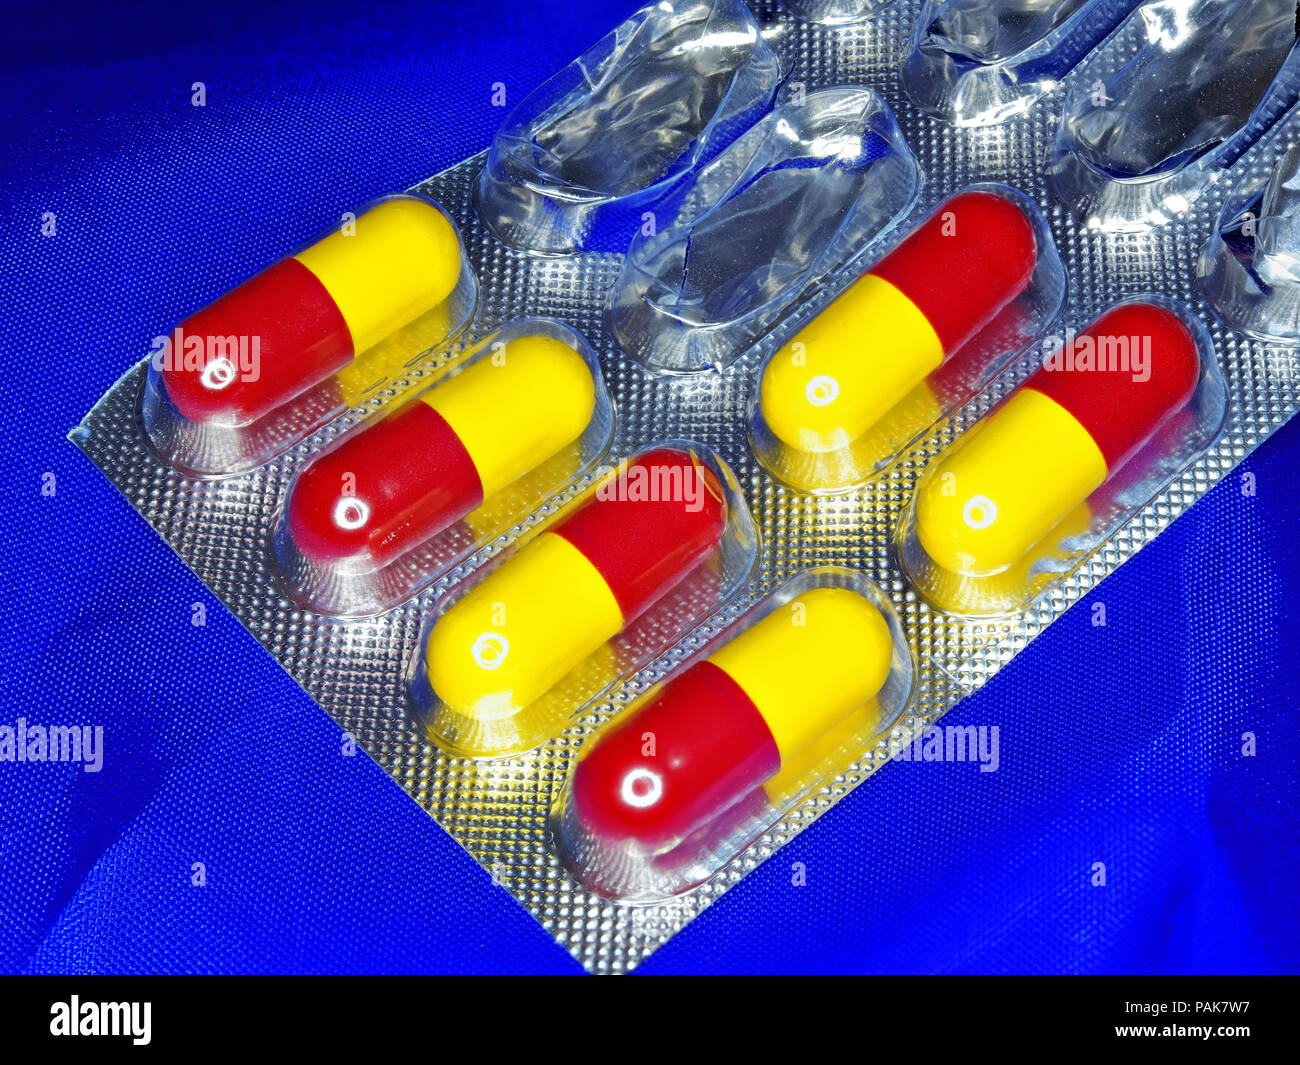 La pénicilline amoxicilline comprimés gélules anti stress biotiques Banque D'Images